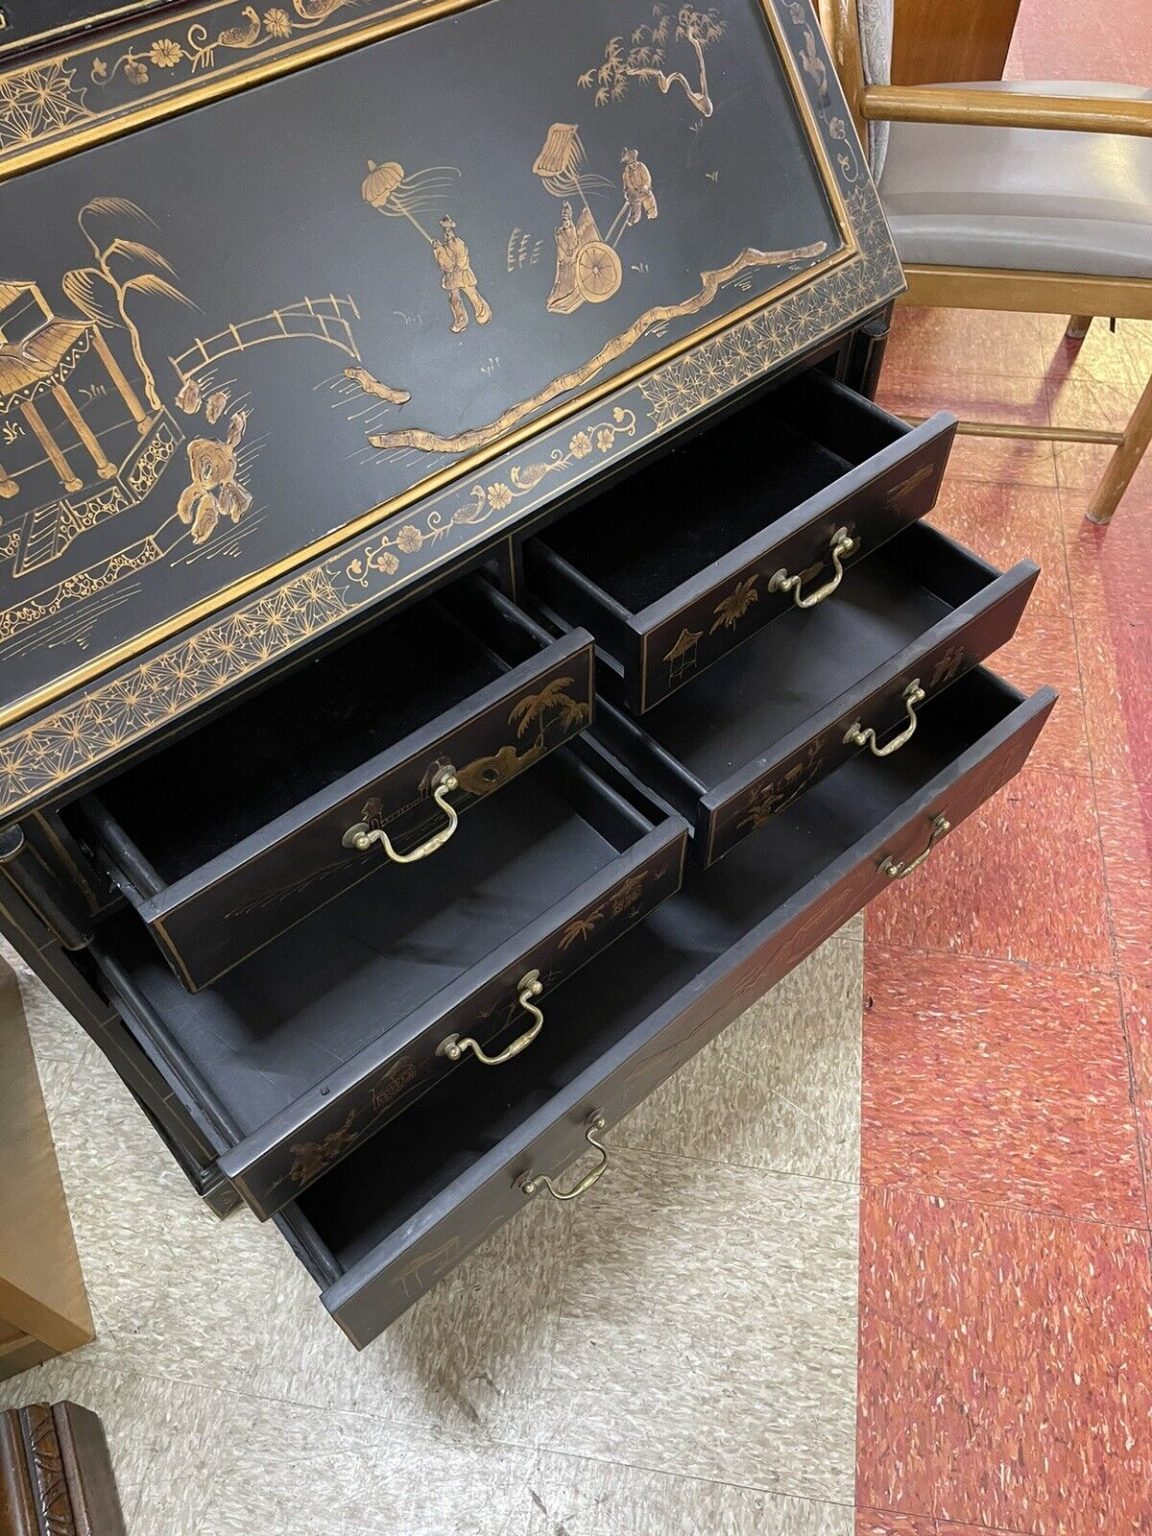 Oriental Style Secretary Desk lower drawers open